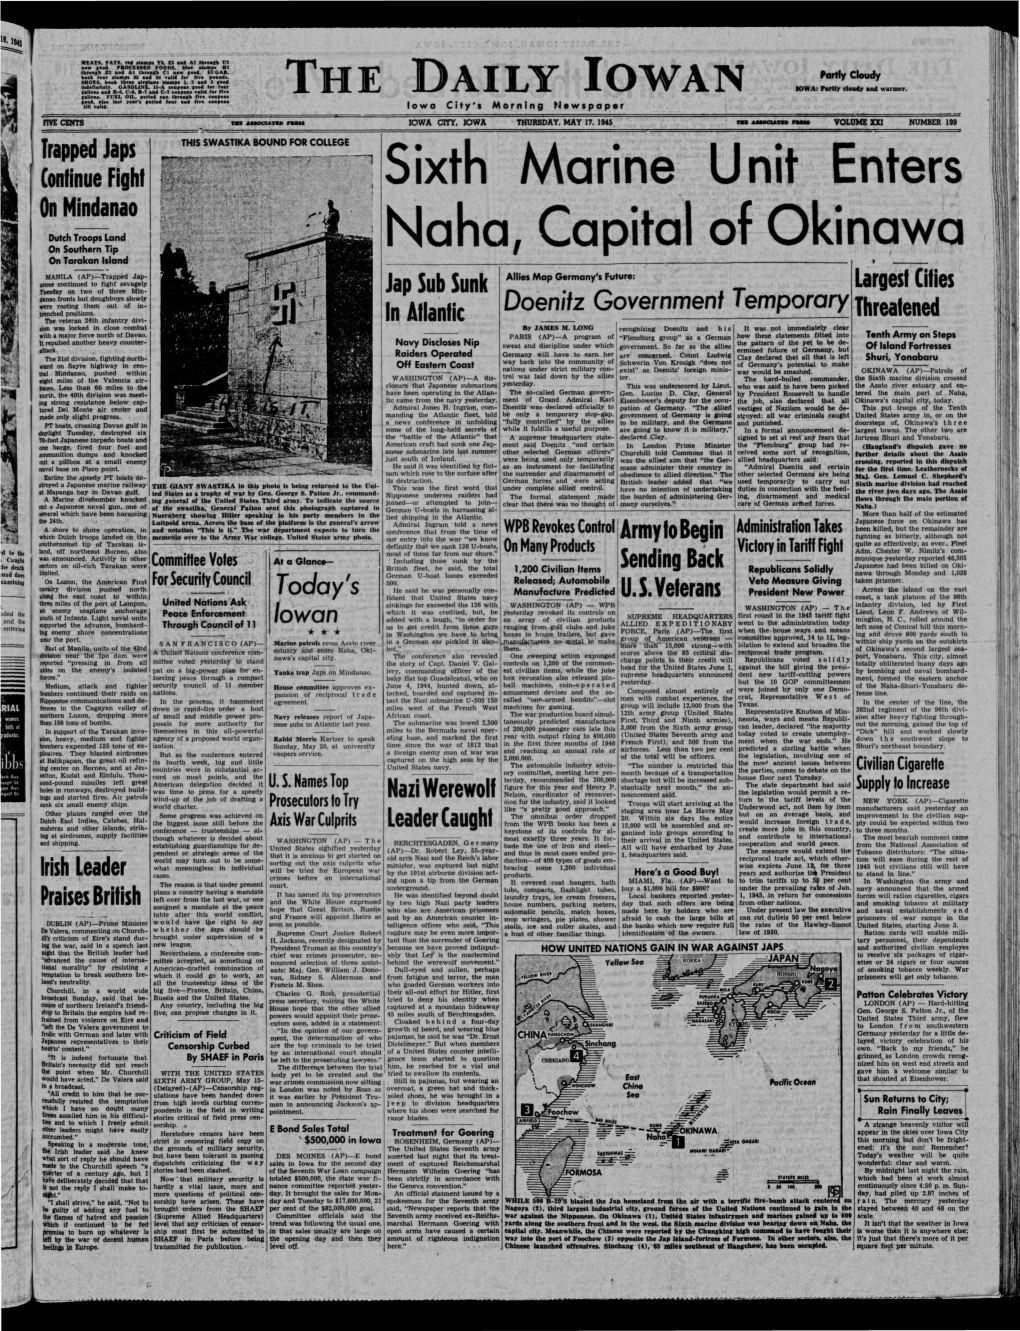 (Iowa City, Iowa), 1945-05-17